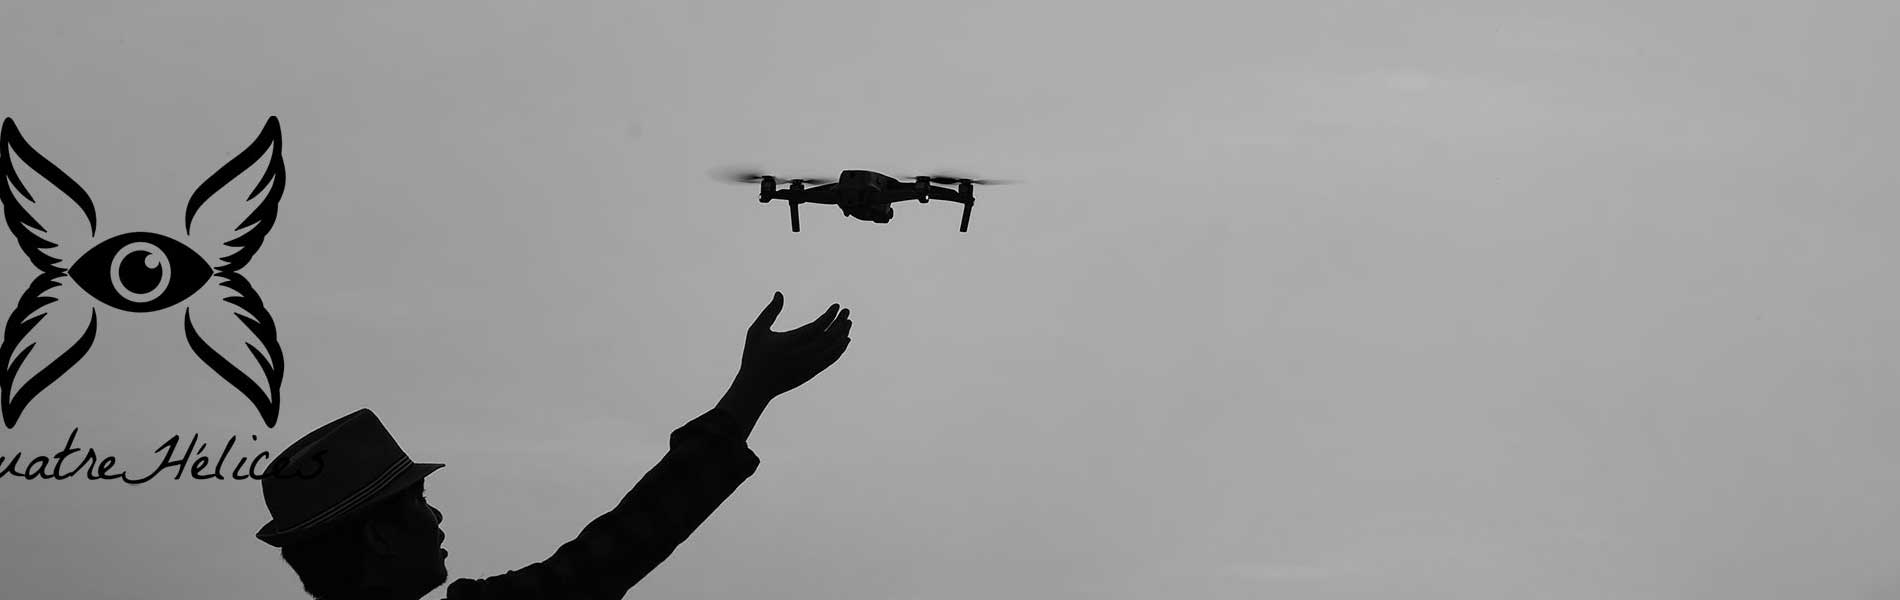 Film pilote de drone Auriol (13390)